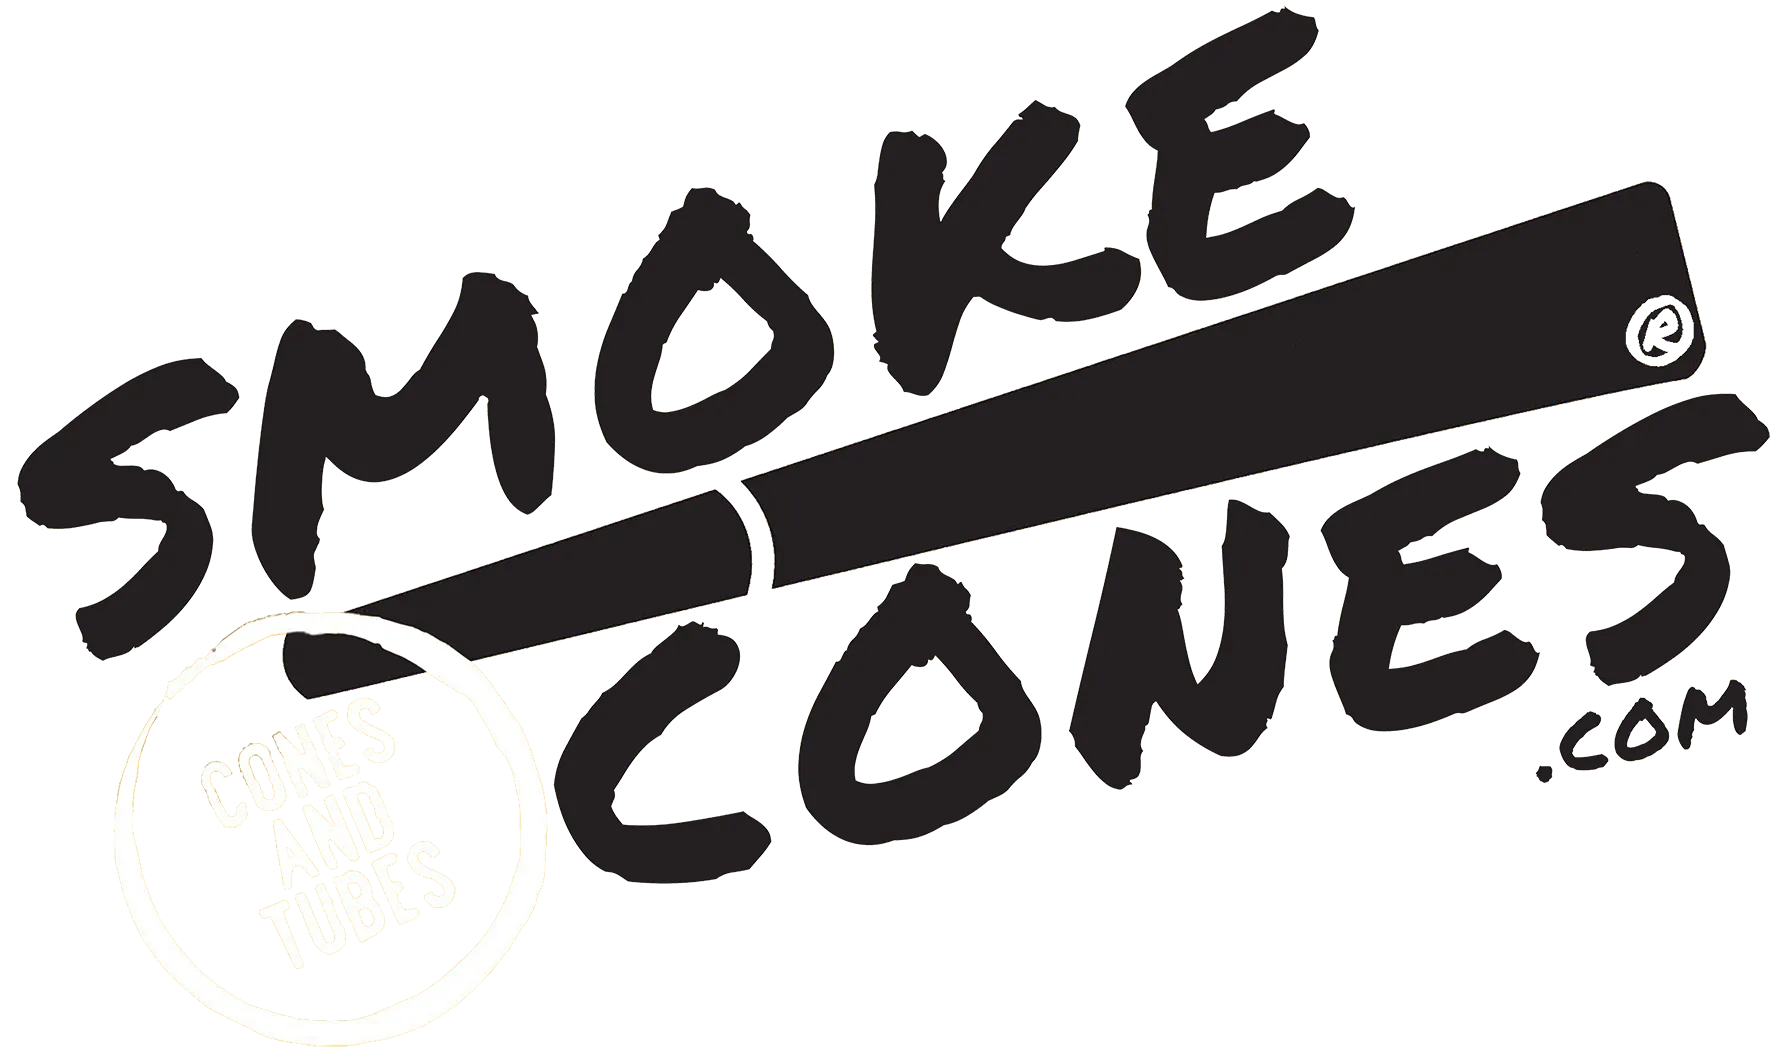 Smokecones.com